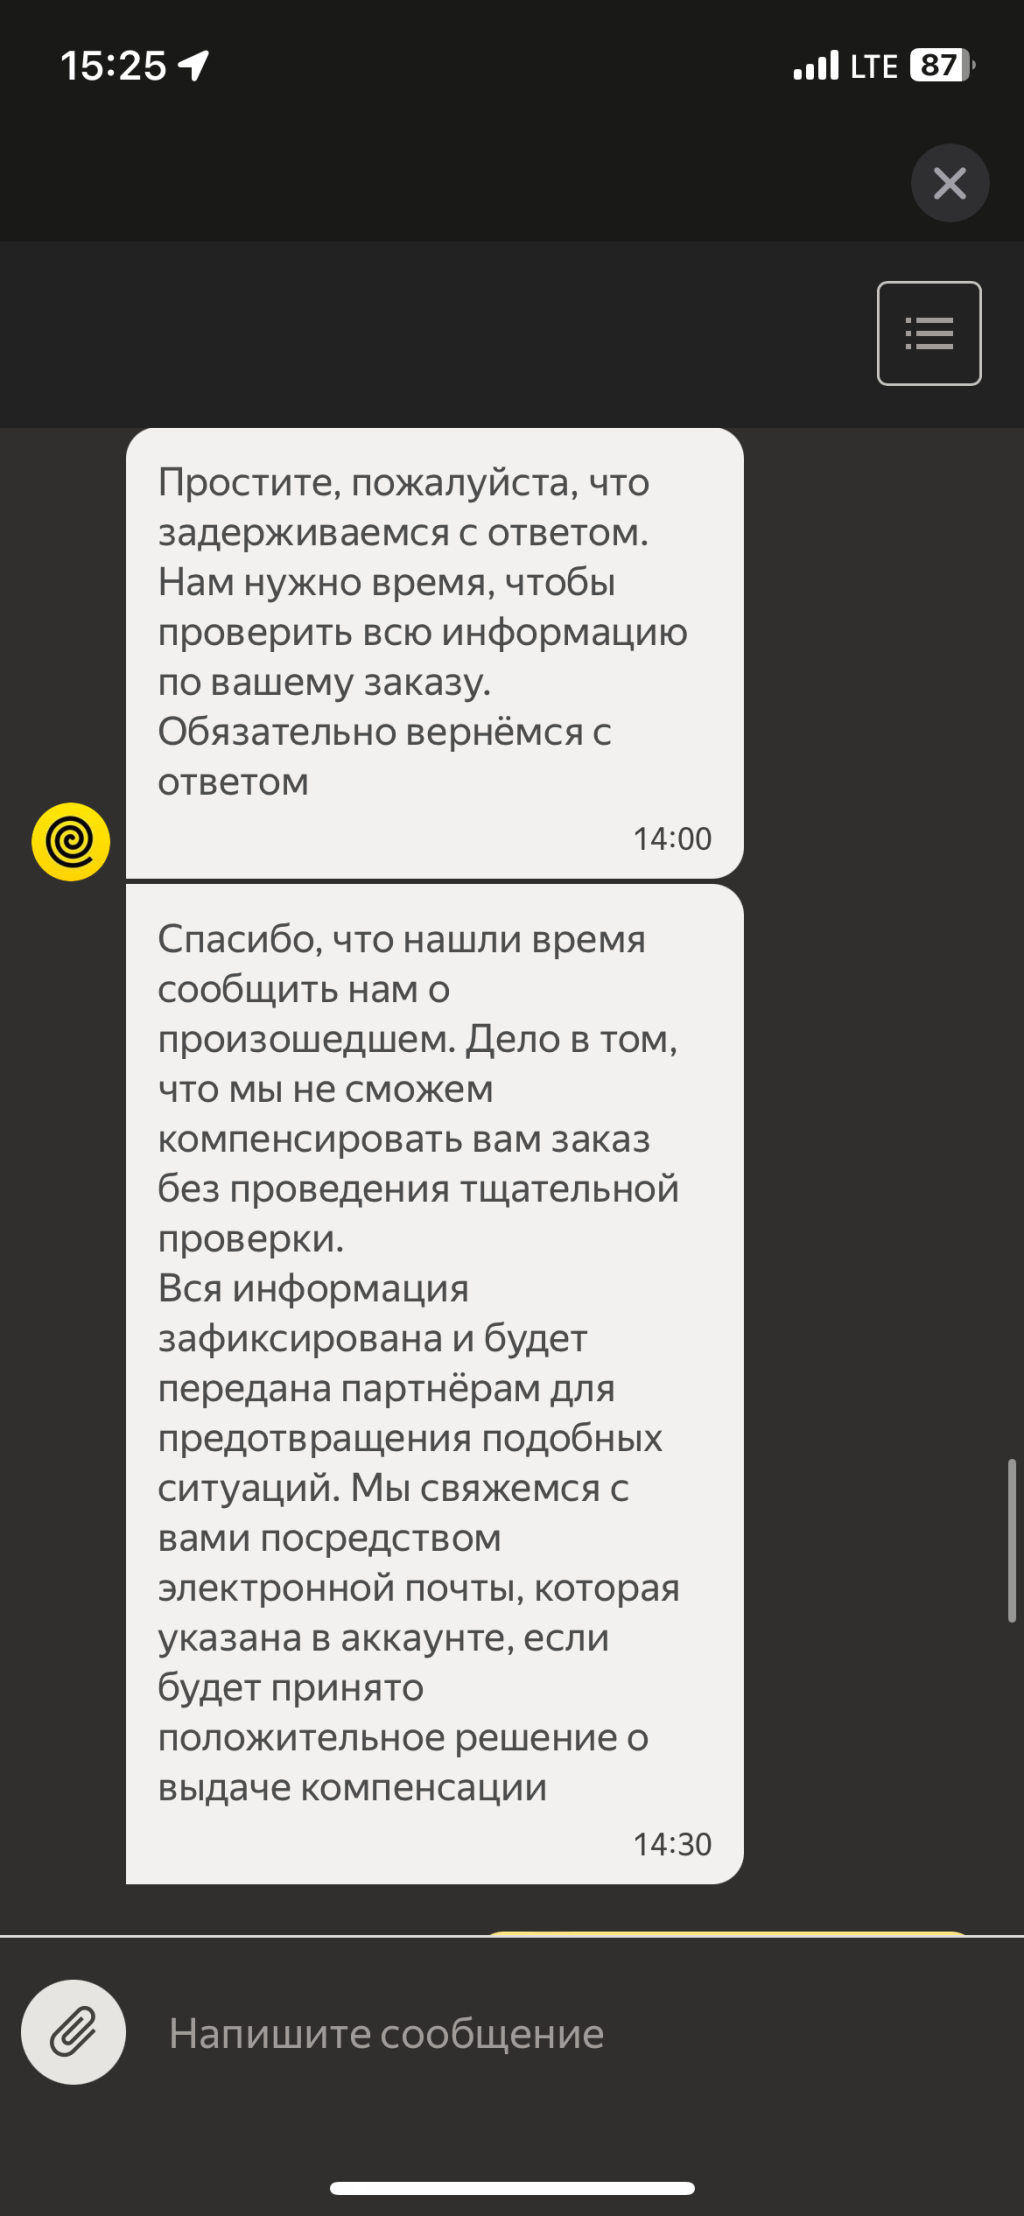 Яндекс.Еда - Привезли не тот заказ и не хочет ничего делать